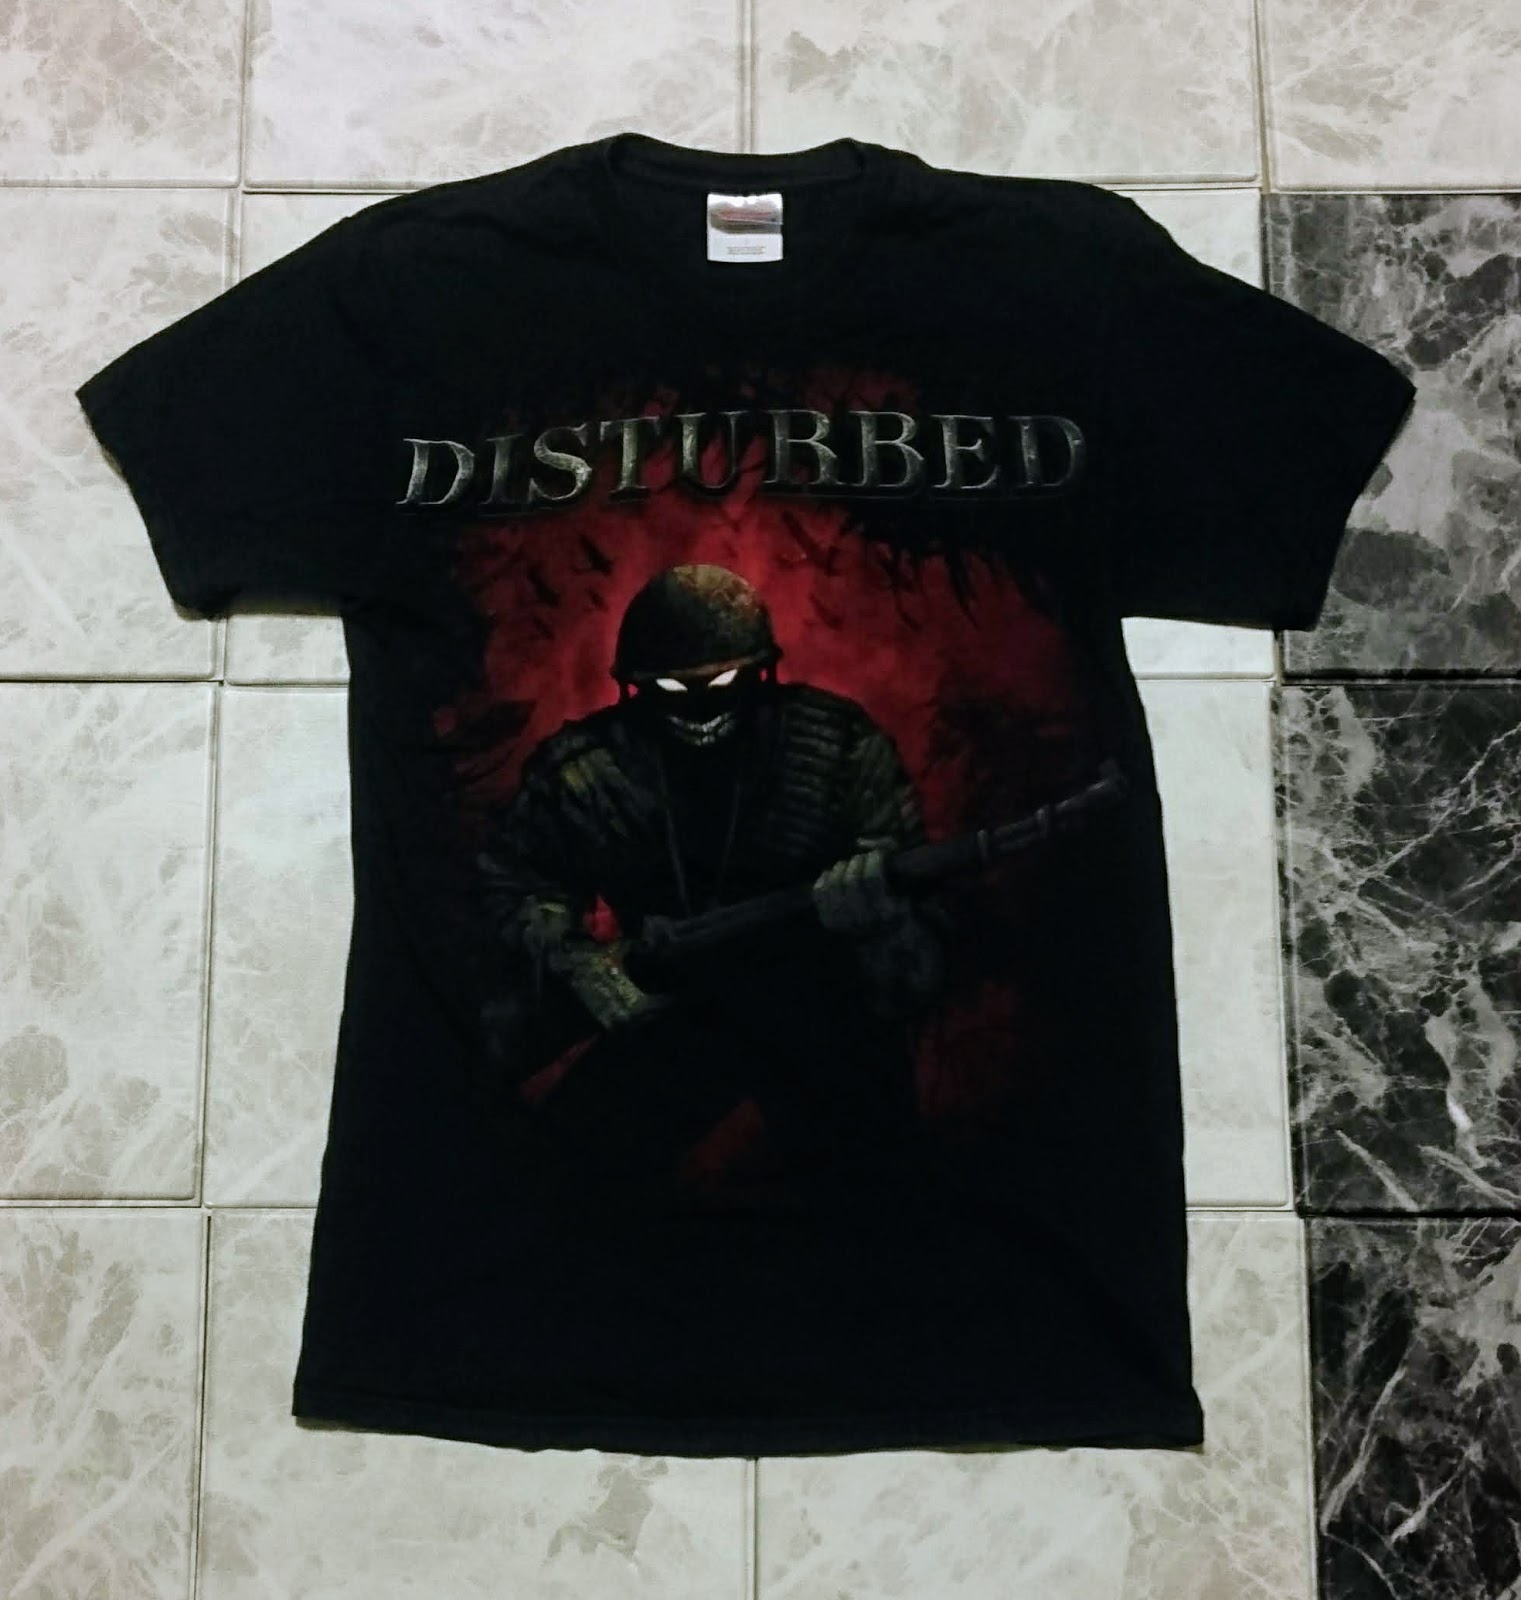 「ディスターブド」古着・ロックTシャツ(黒)の「着こなし方」を考える。 〈DISTURBED・ディスターブド〉Tシャツ・コーディネート